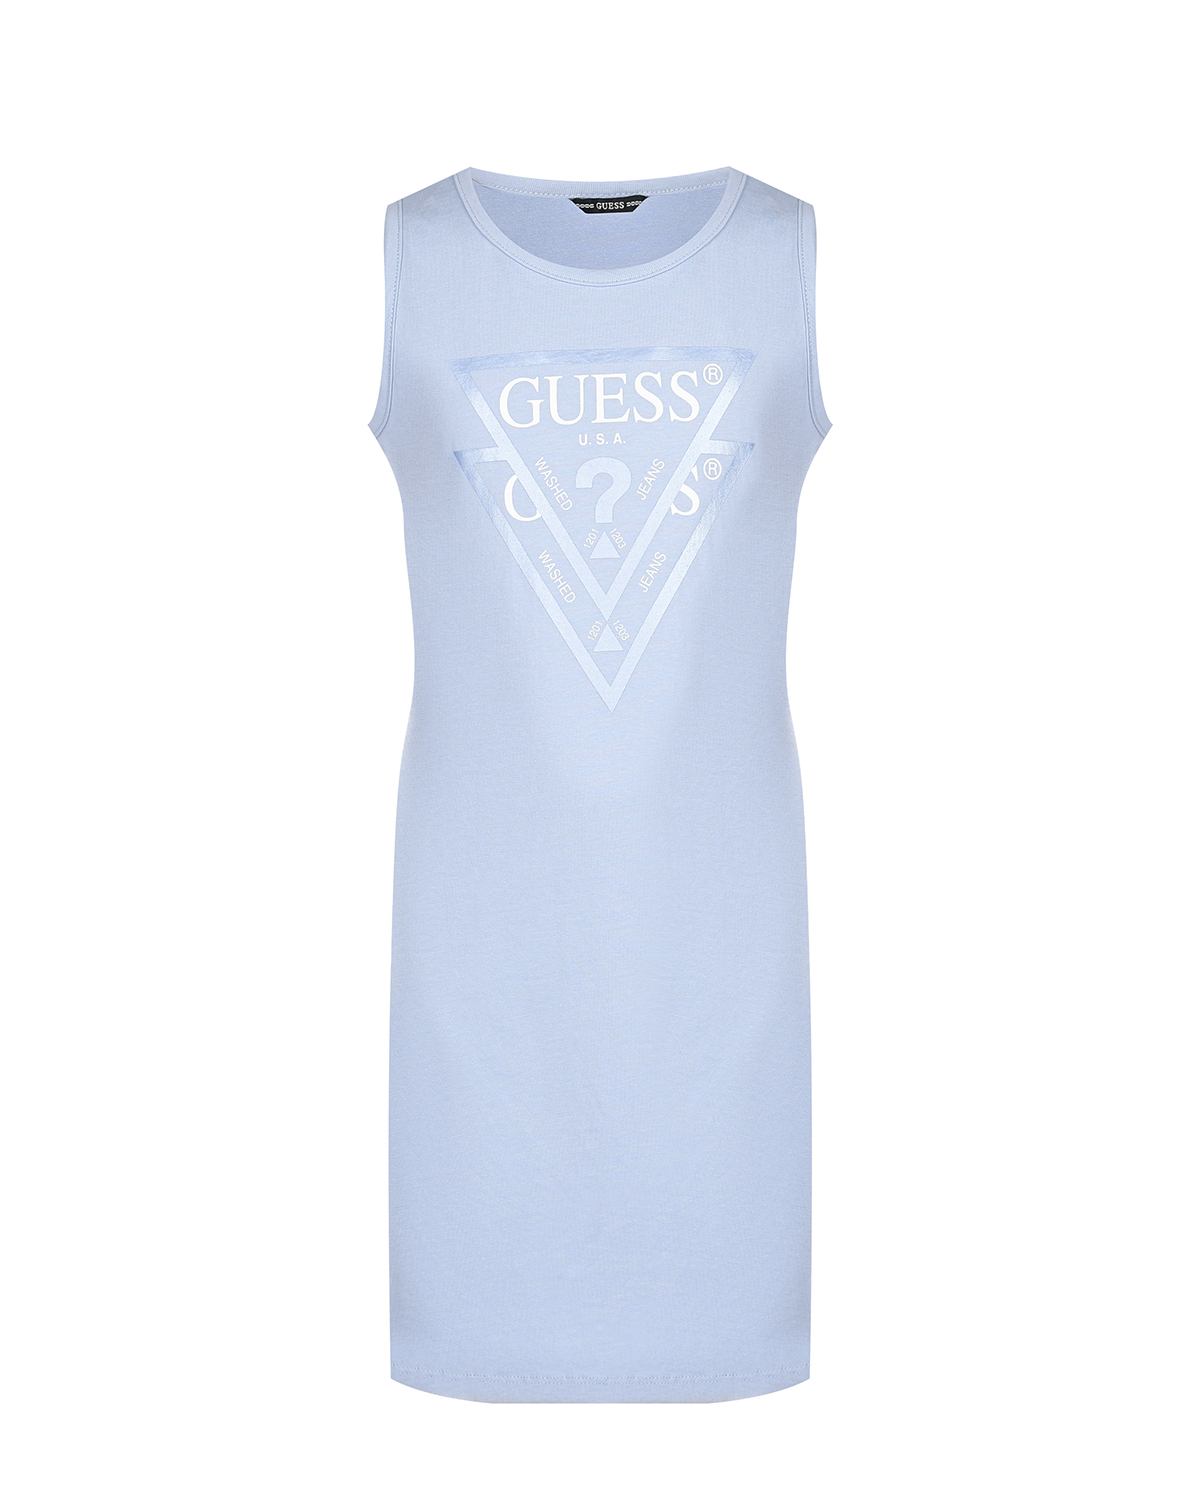 Голубое платье с белым лого Guess, размер 140, цвет голубой - фото 1